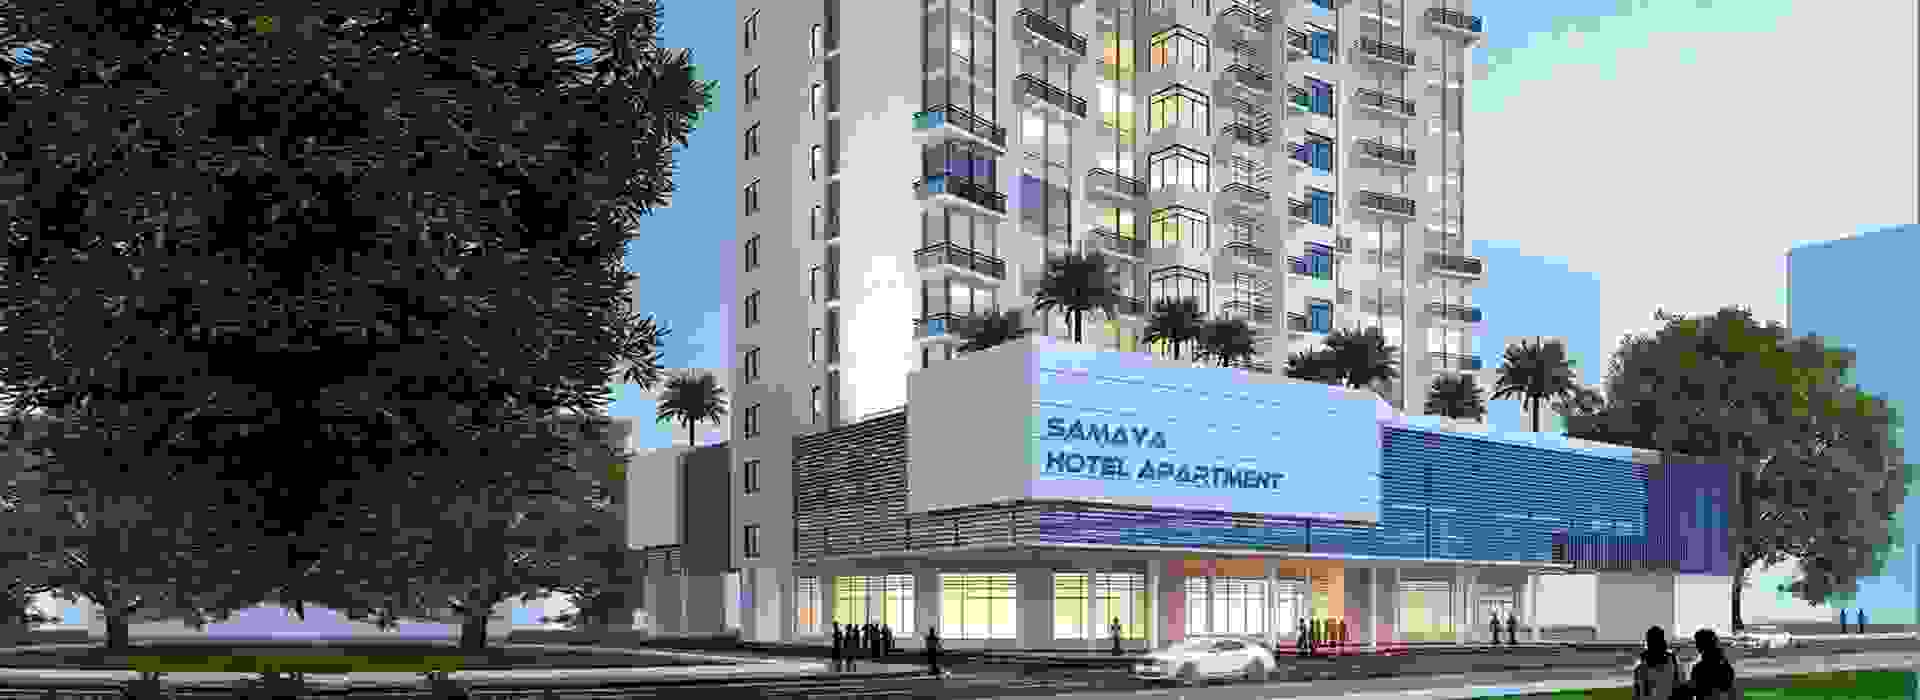 Samaya Hotel Apartment